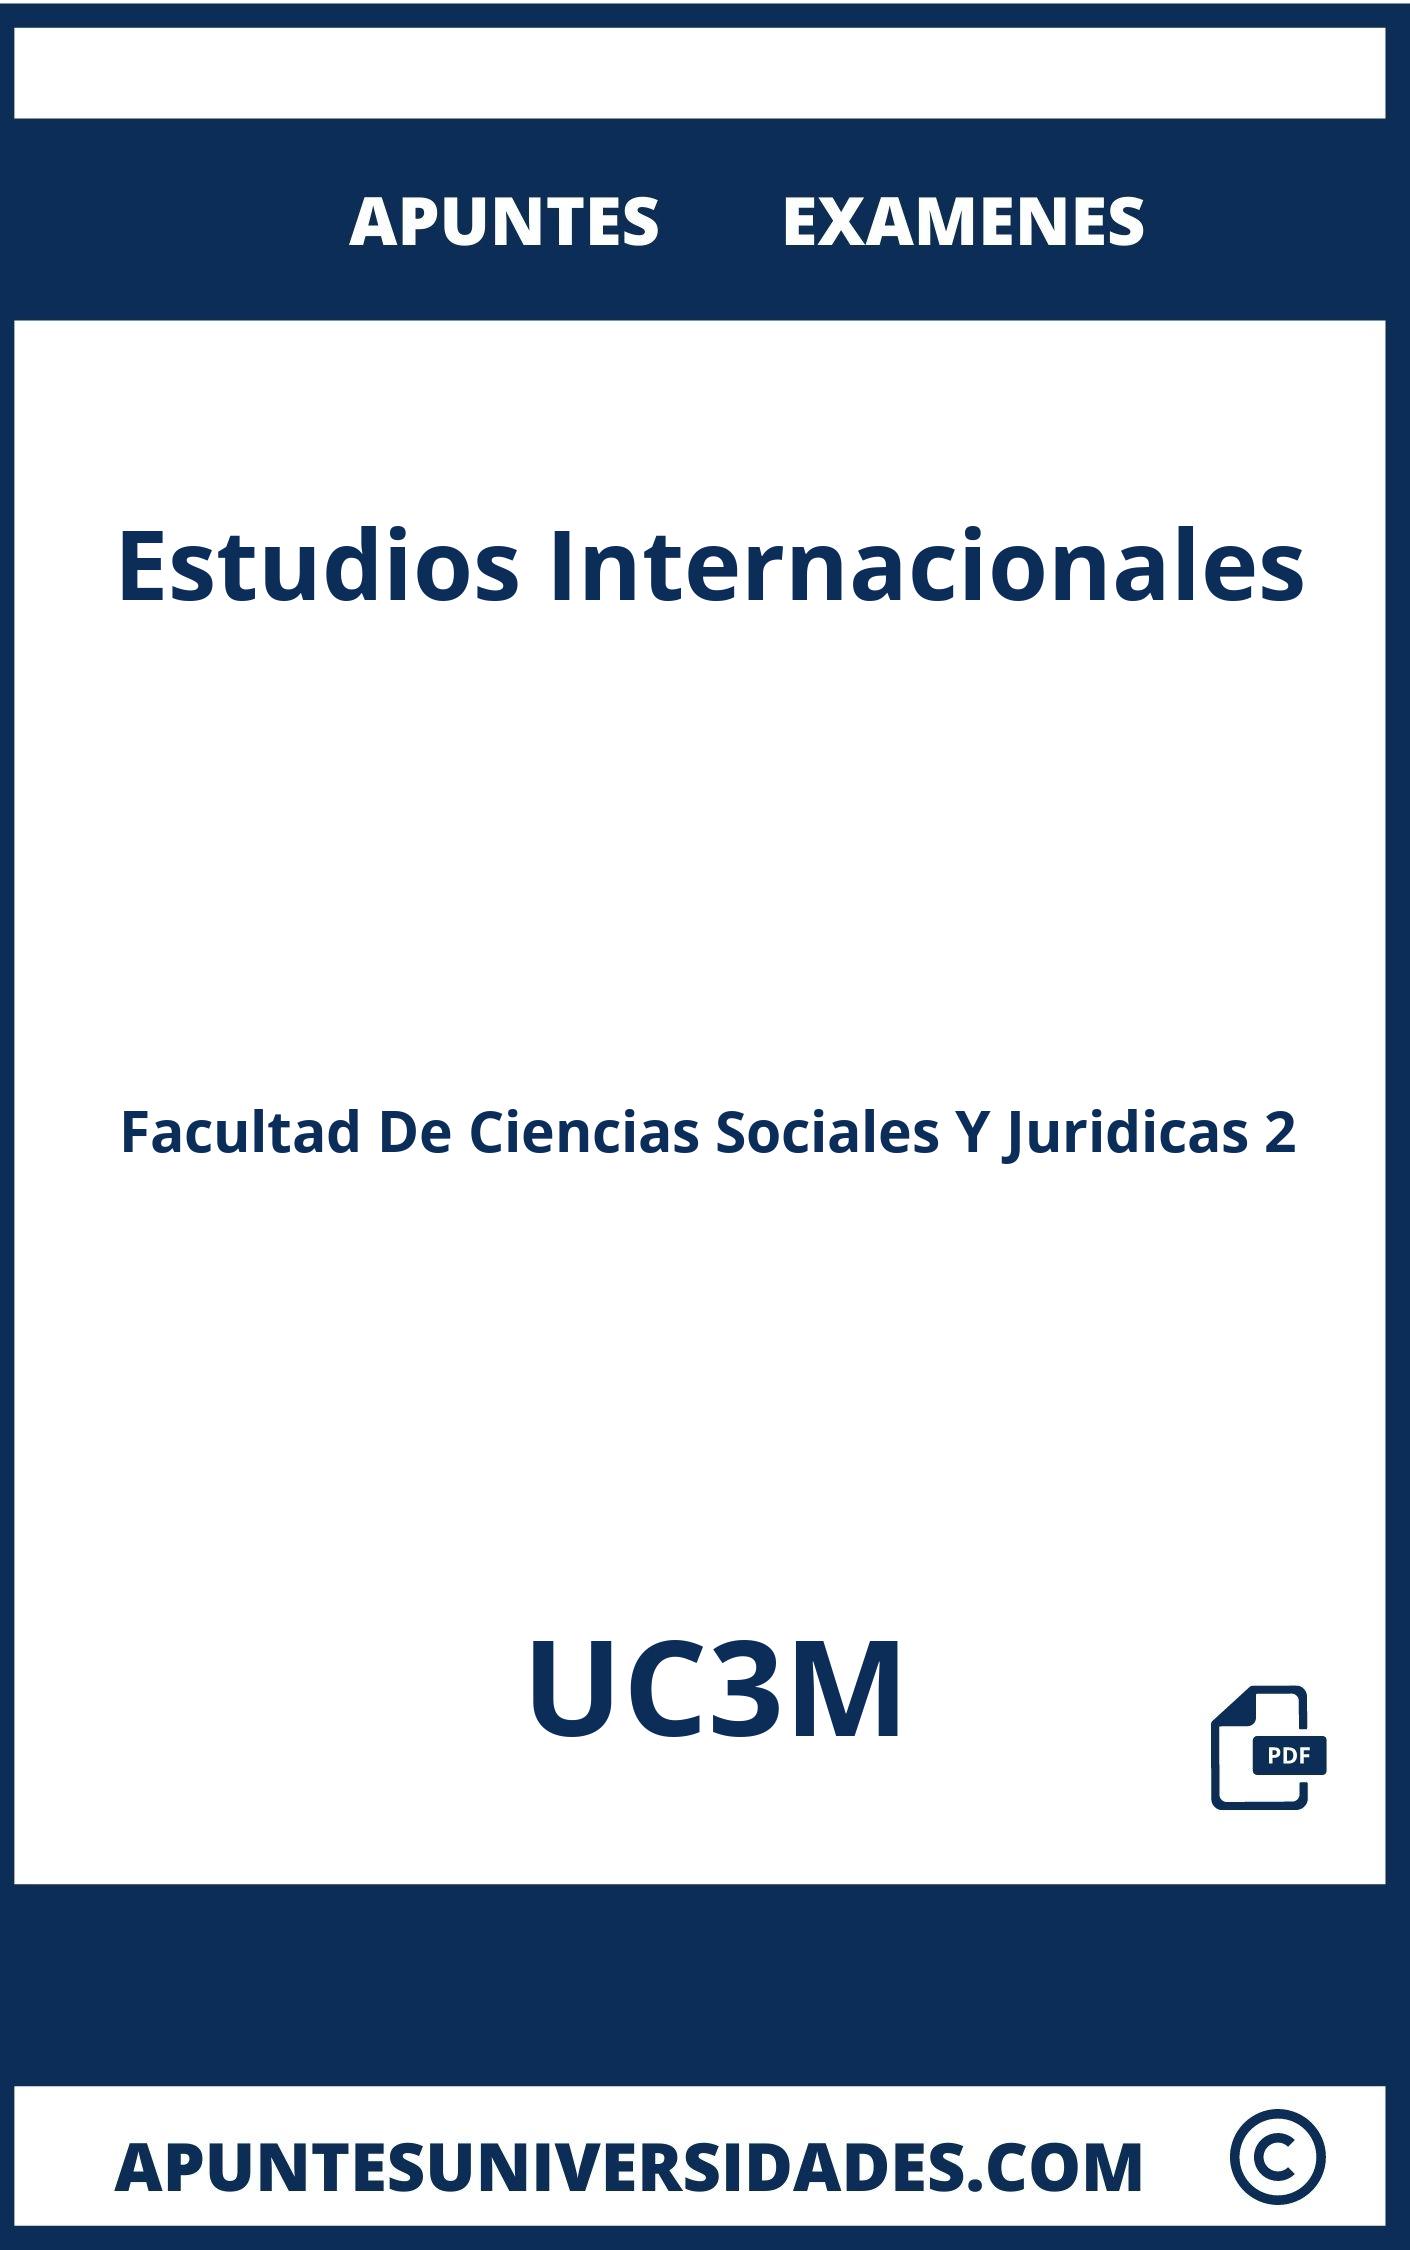 Apuntes Examenes Estudios Internacionales UC3M